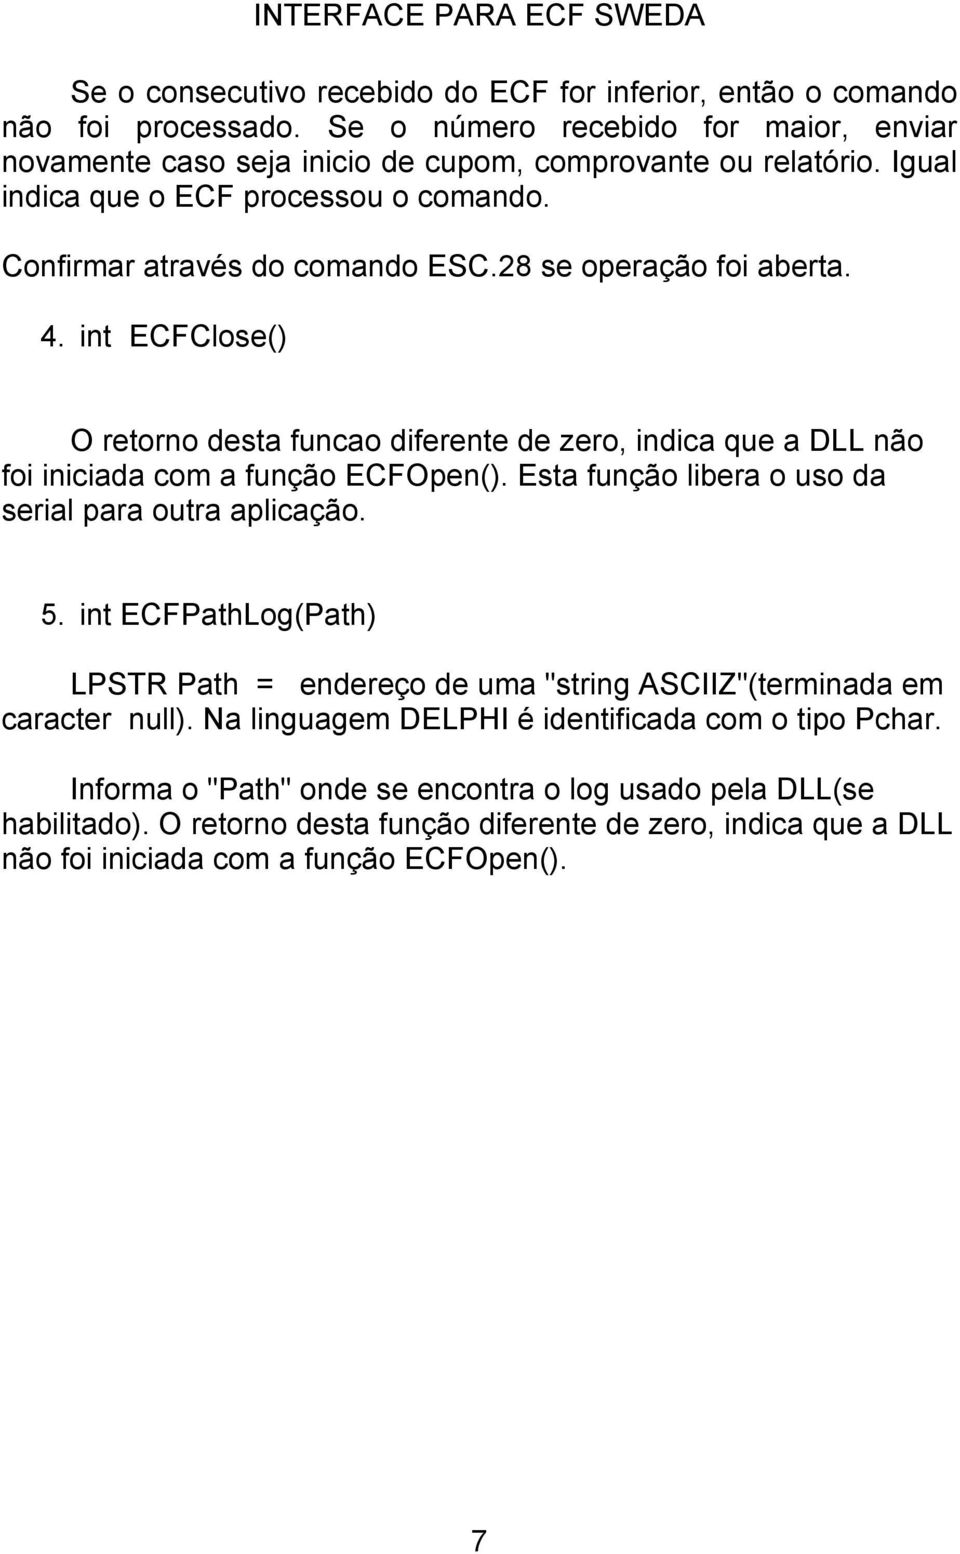 int ECFClose() O retorno desta funcao diferente de zero, indica que a DLL não foi iniciada com a função ECFOpen(). Esta função libera o uso da serial para outra aplicação. 5.